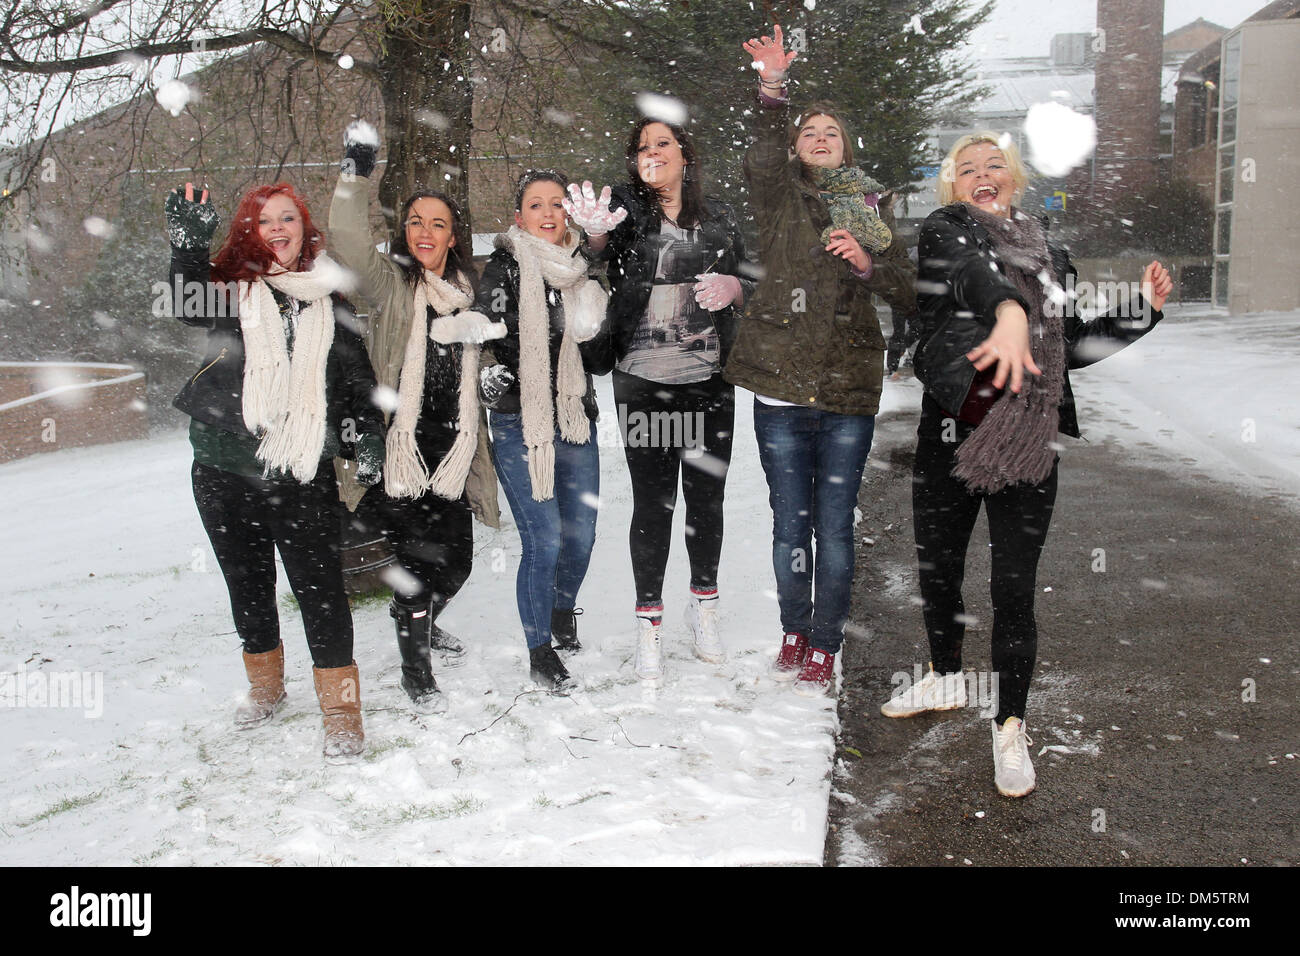 Sechs Studenten abgebildet, die einen Schneeball kämpfen in starkem Schneefall in Brighton, East Sussex. Stockfoto